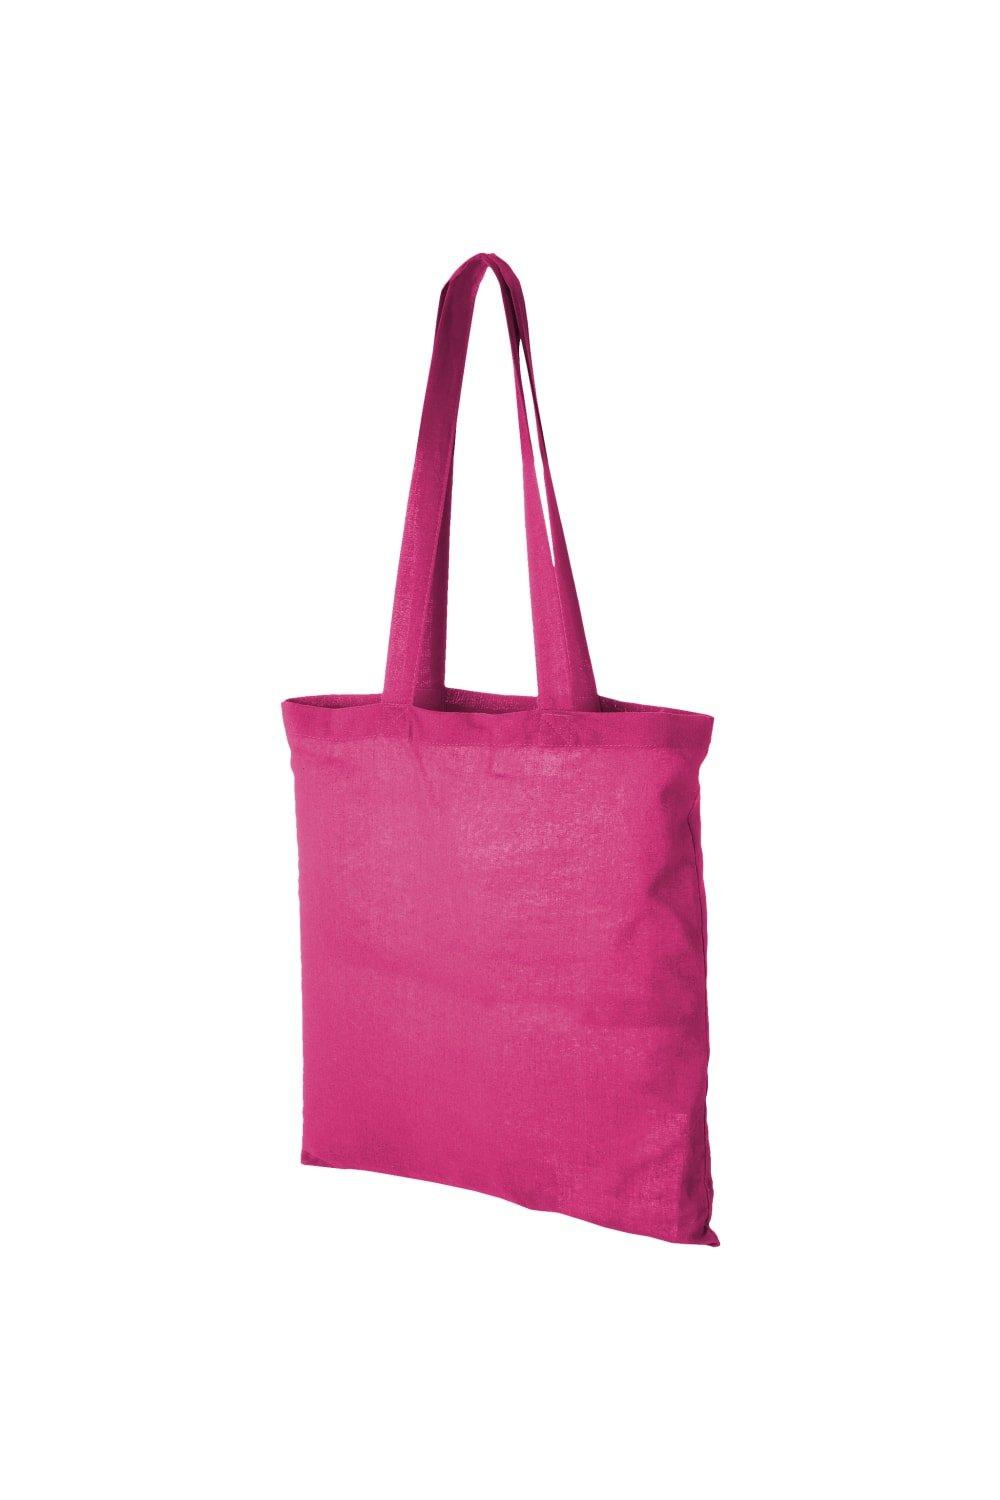 Хлопковая сумка-тоут Carolina Bullet, розовый мешочек сумка подарочный винового года каролина